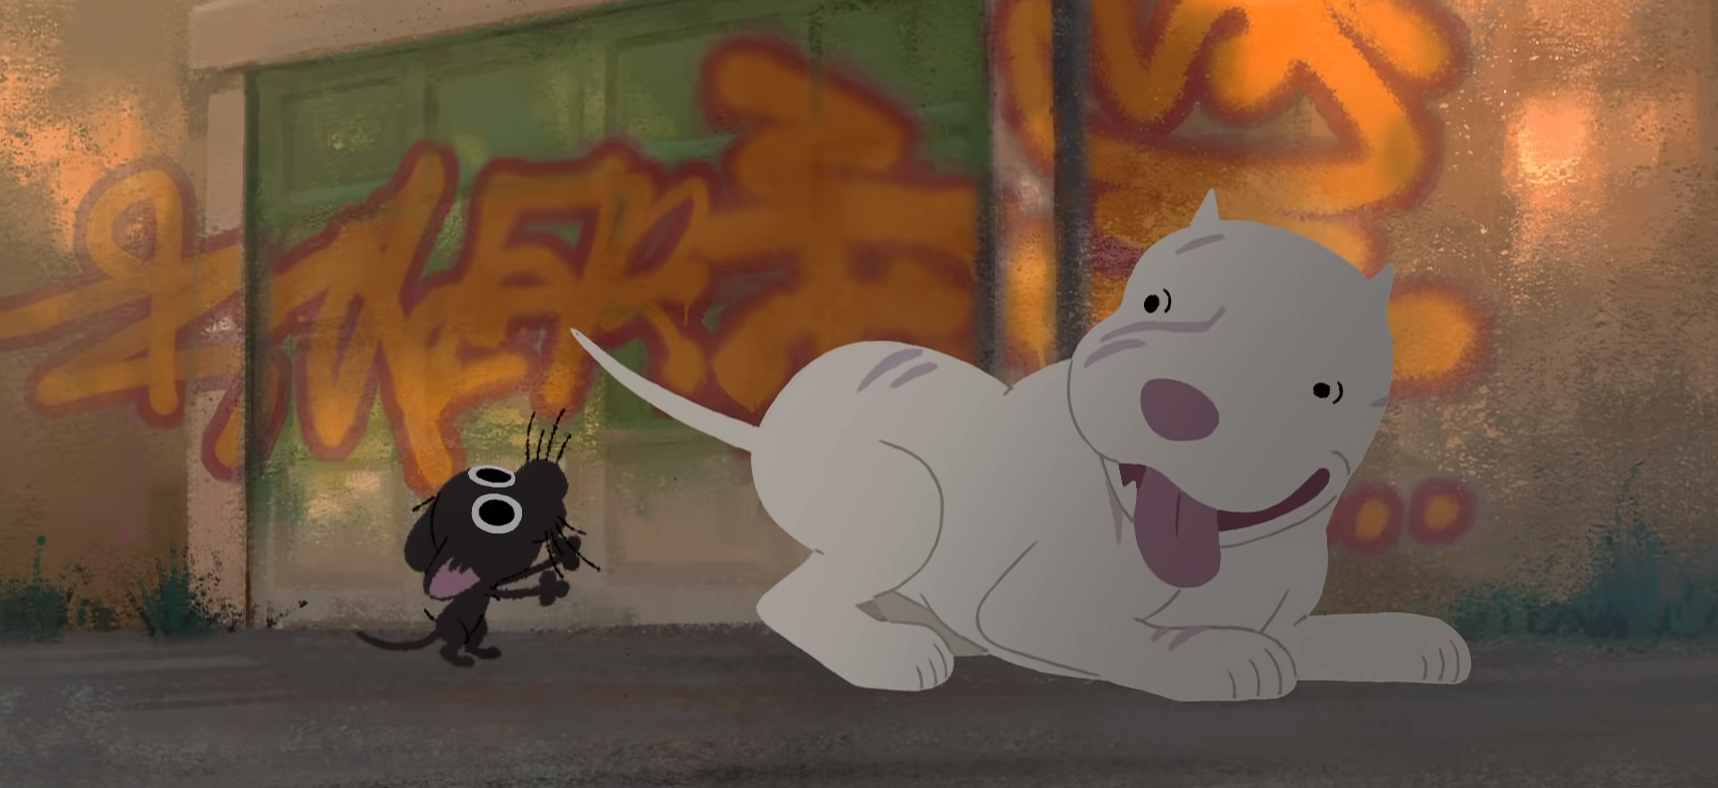 El conmovedor corto de Pixar que crea conciencia sobre el maltrato animal -  Radio Duna